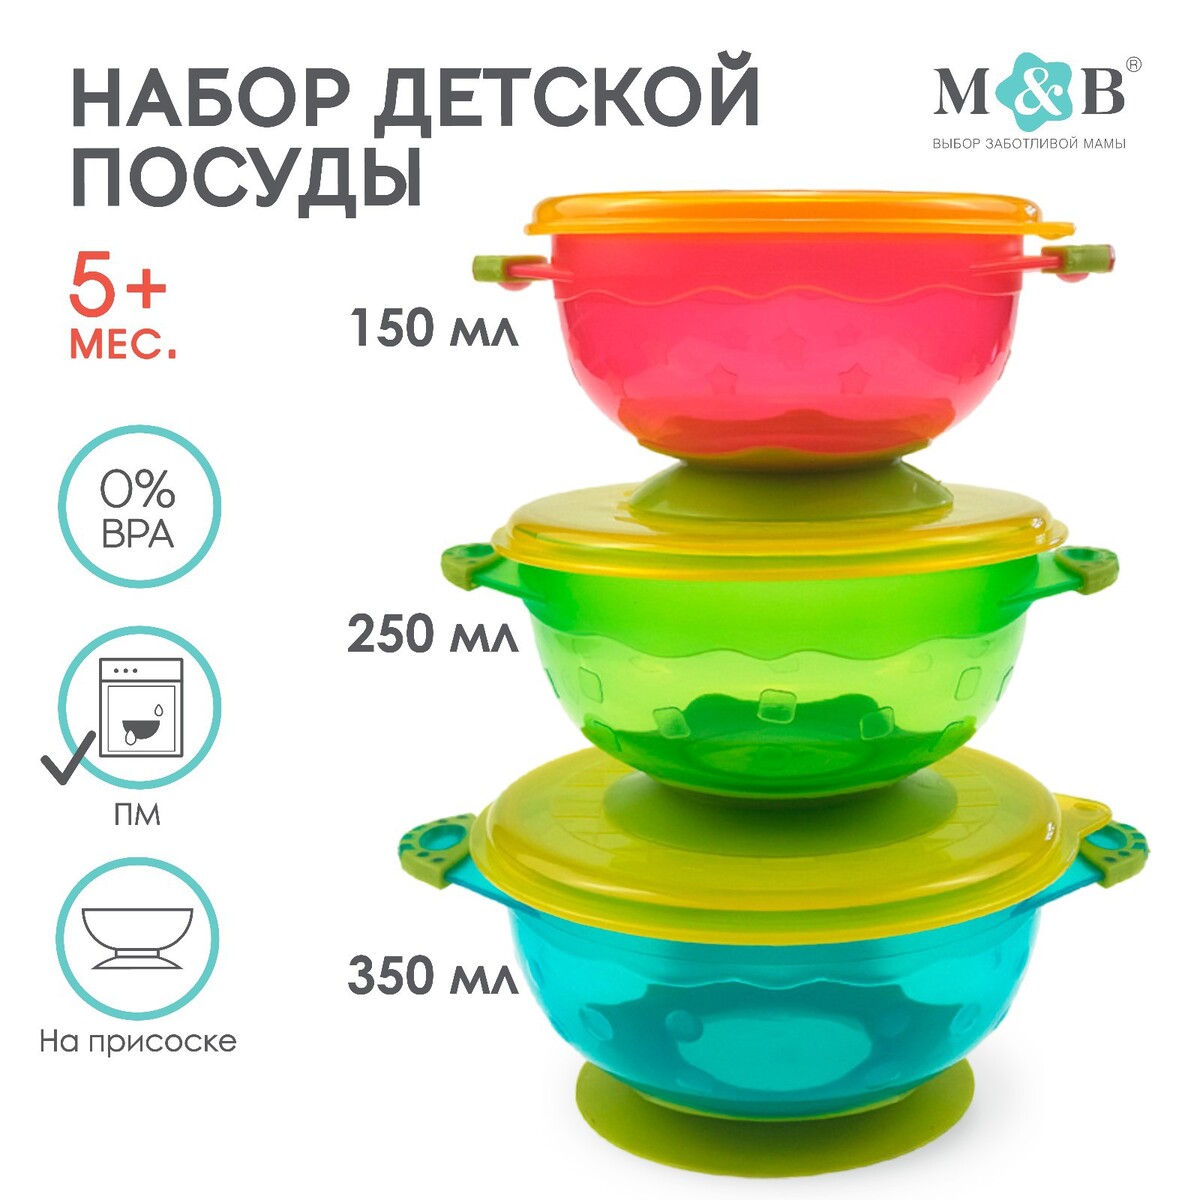 Набор детской посуды для кормления/хранения: миски на присоске, 3 шт.,150, 250, 350 мл. с крышками, от 5 мес. набор вертушек на присоске